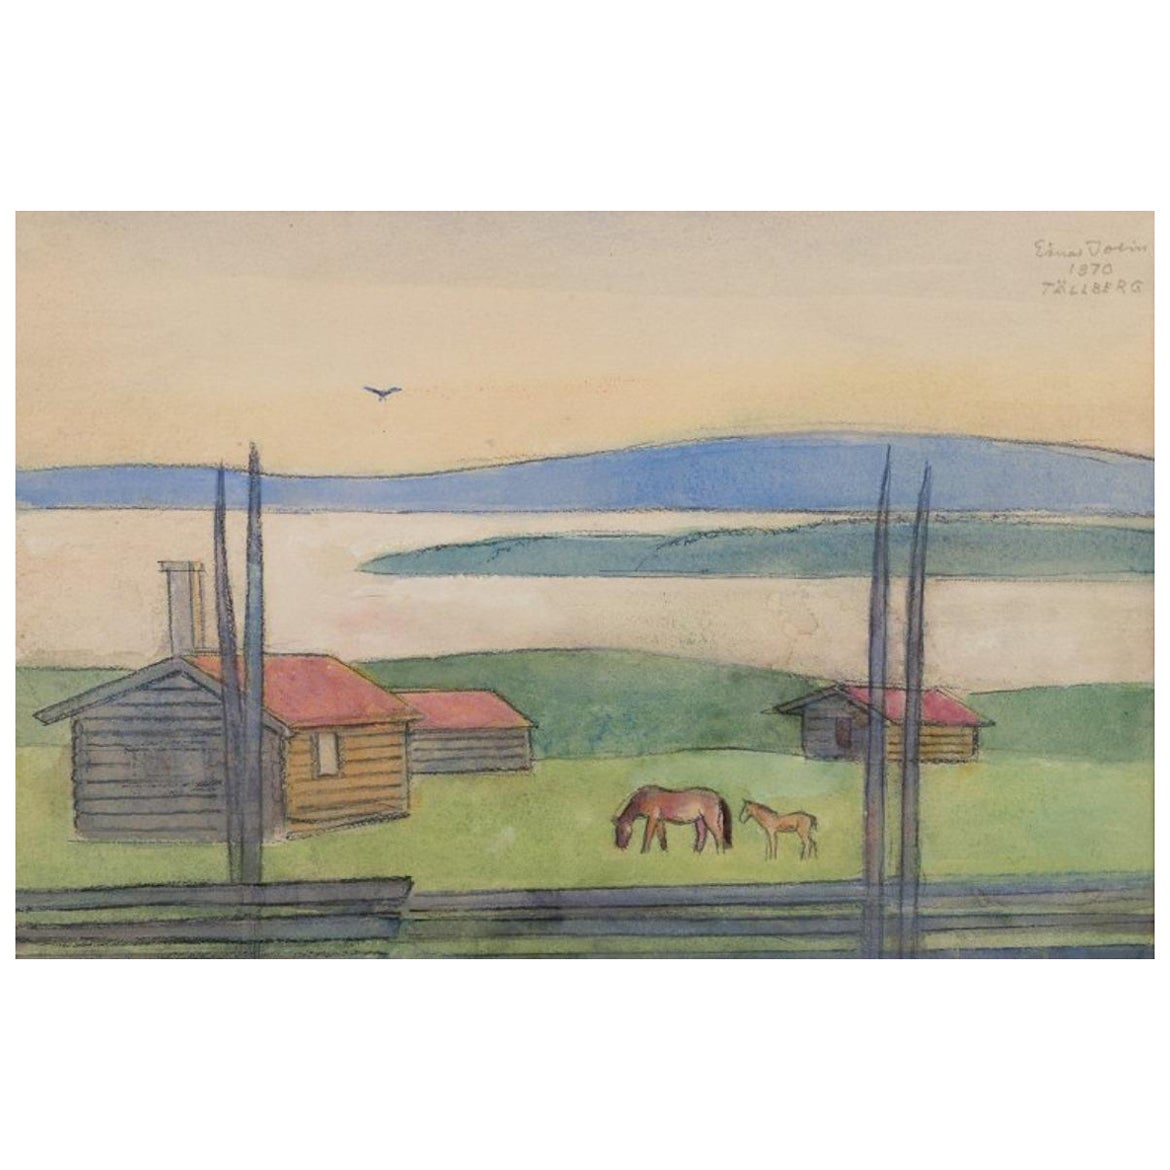 Einar Jolin, artiste suédois bien connu. Pastel à l'huile sur papier. Paysage suédois.